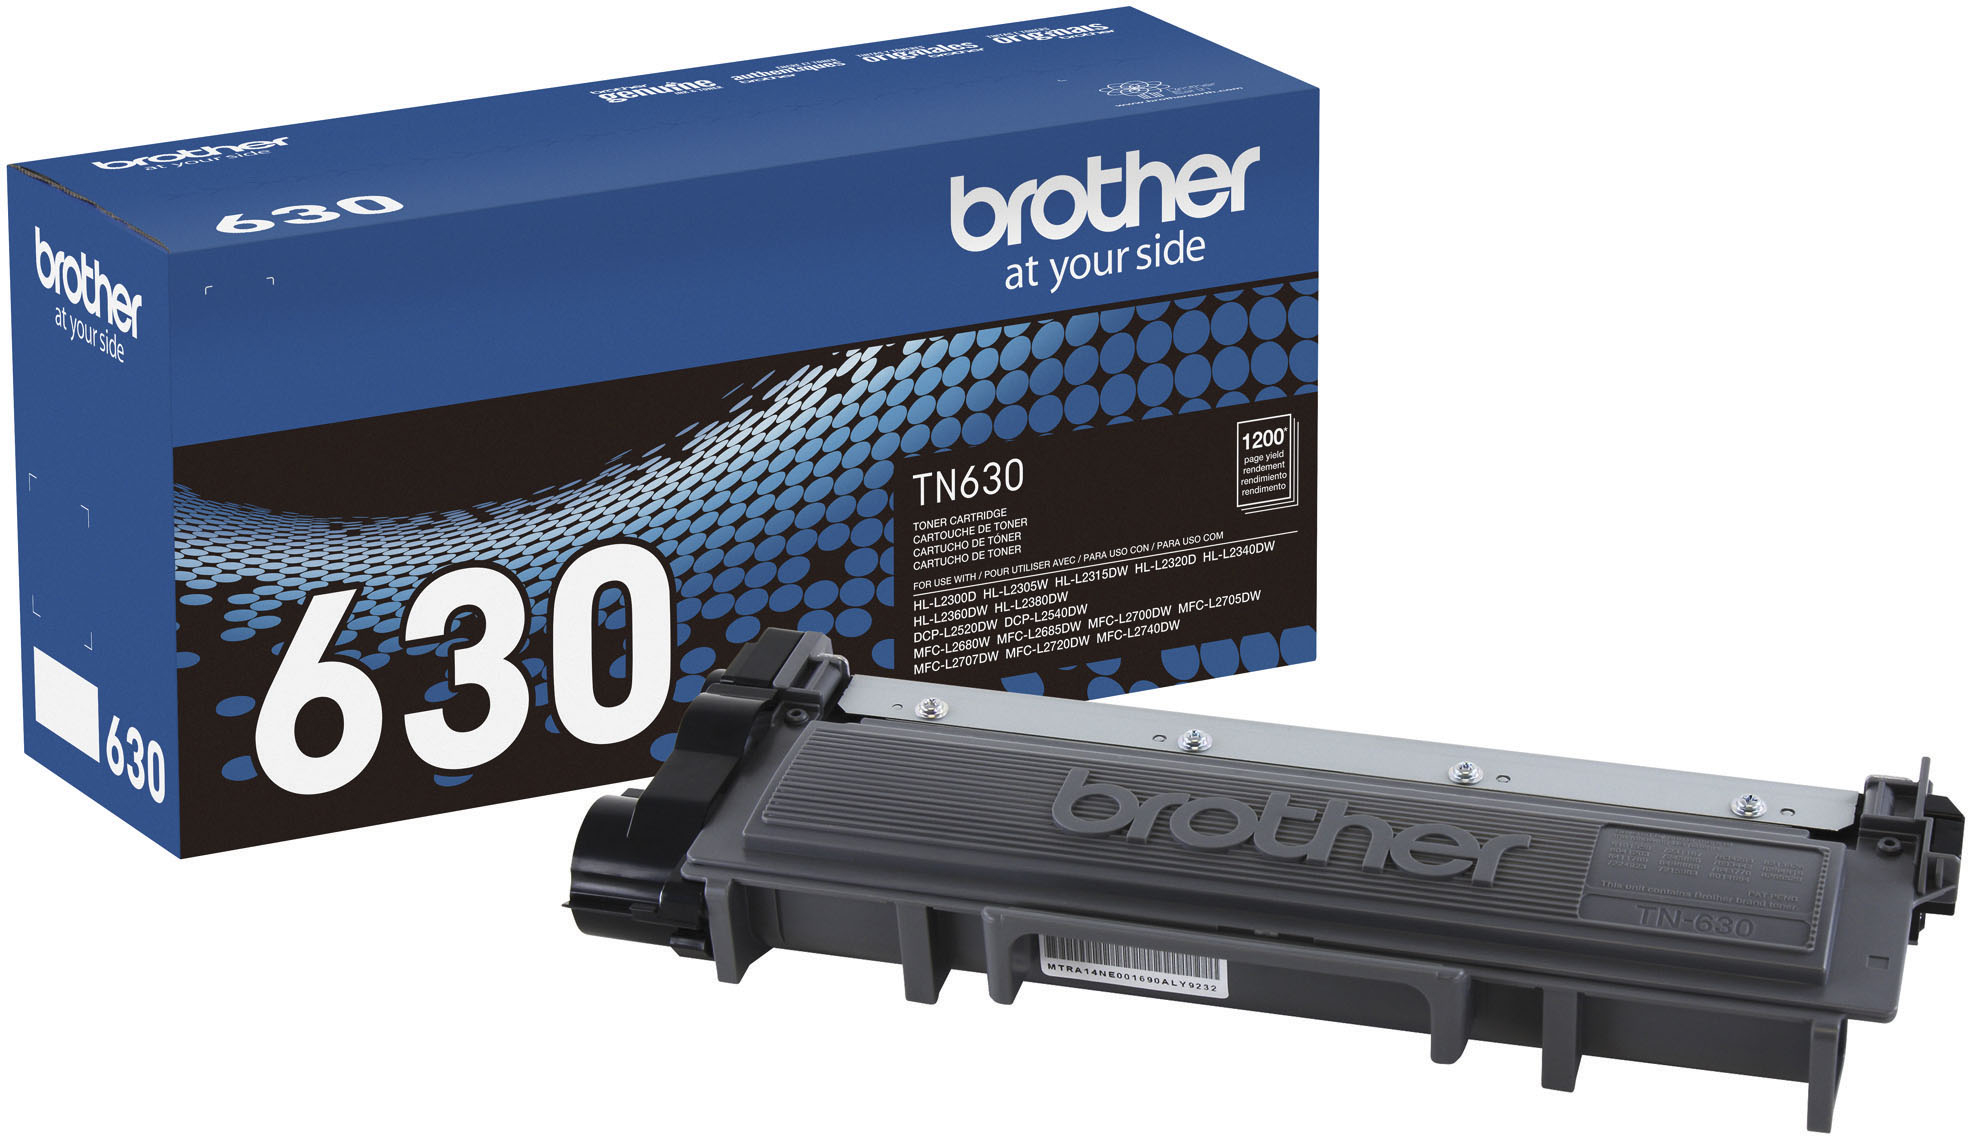 Cartouche de toner noire compatible pour Brother TN760 - Pack de 2